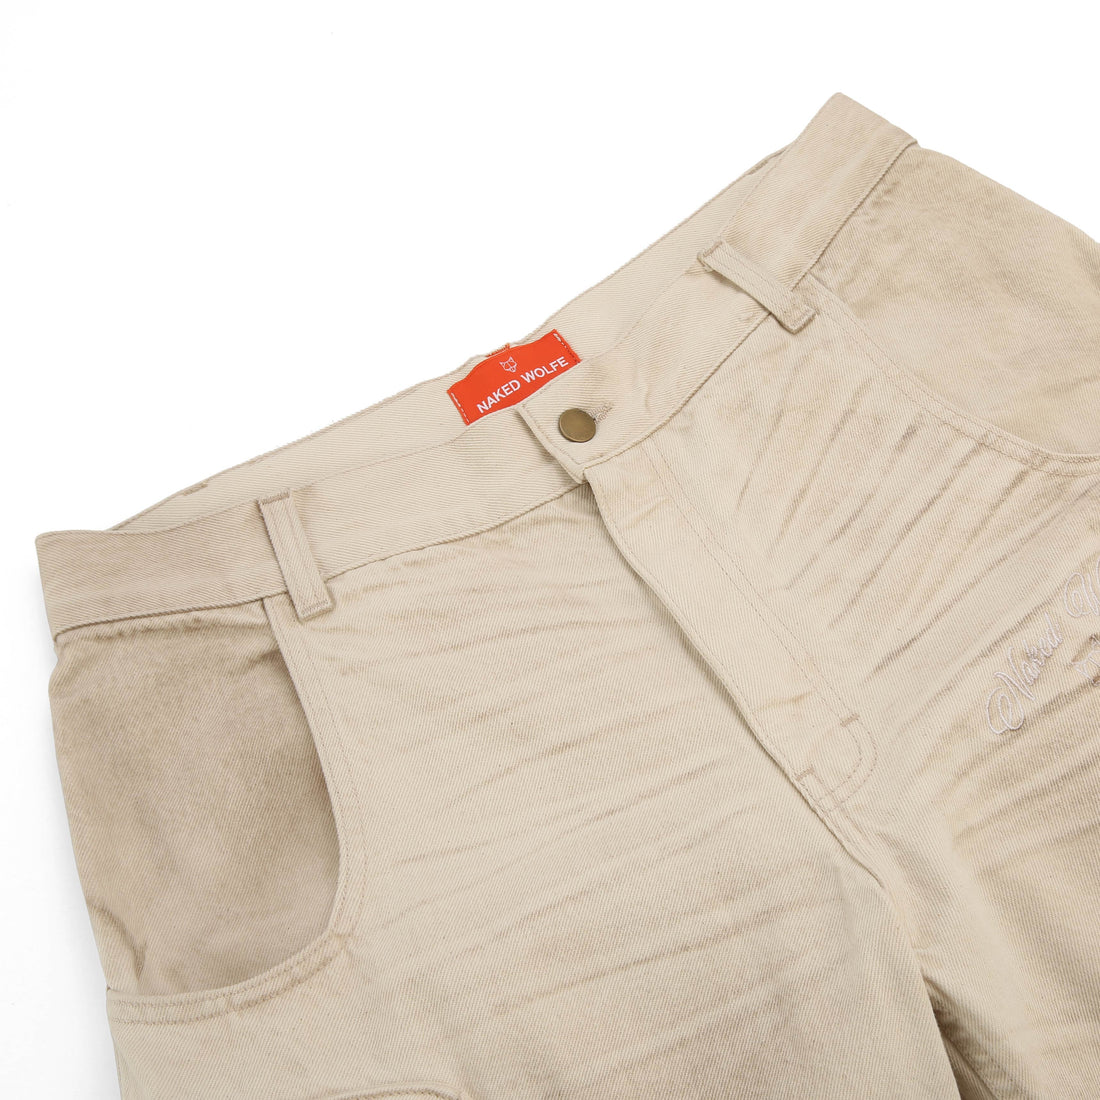 Denim Cargo Shorts Vintage Natural